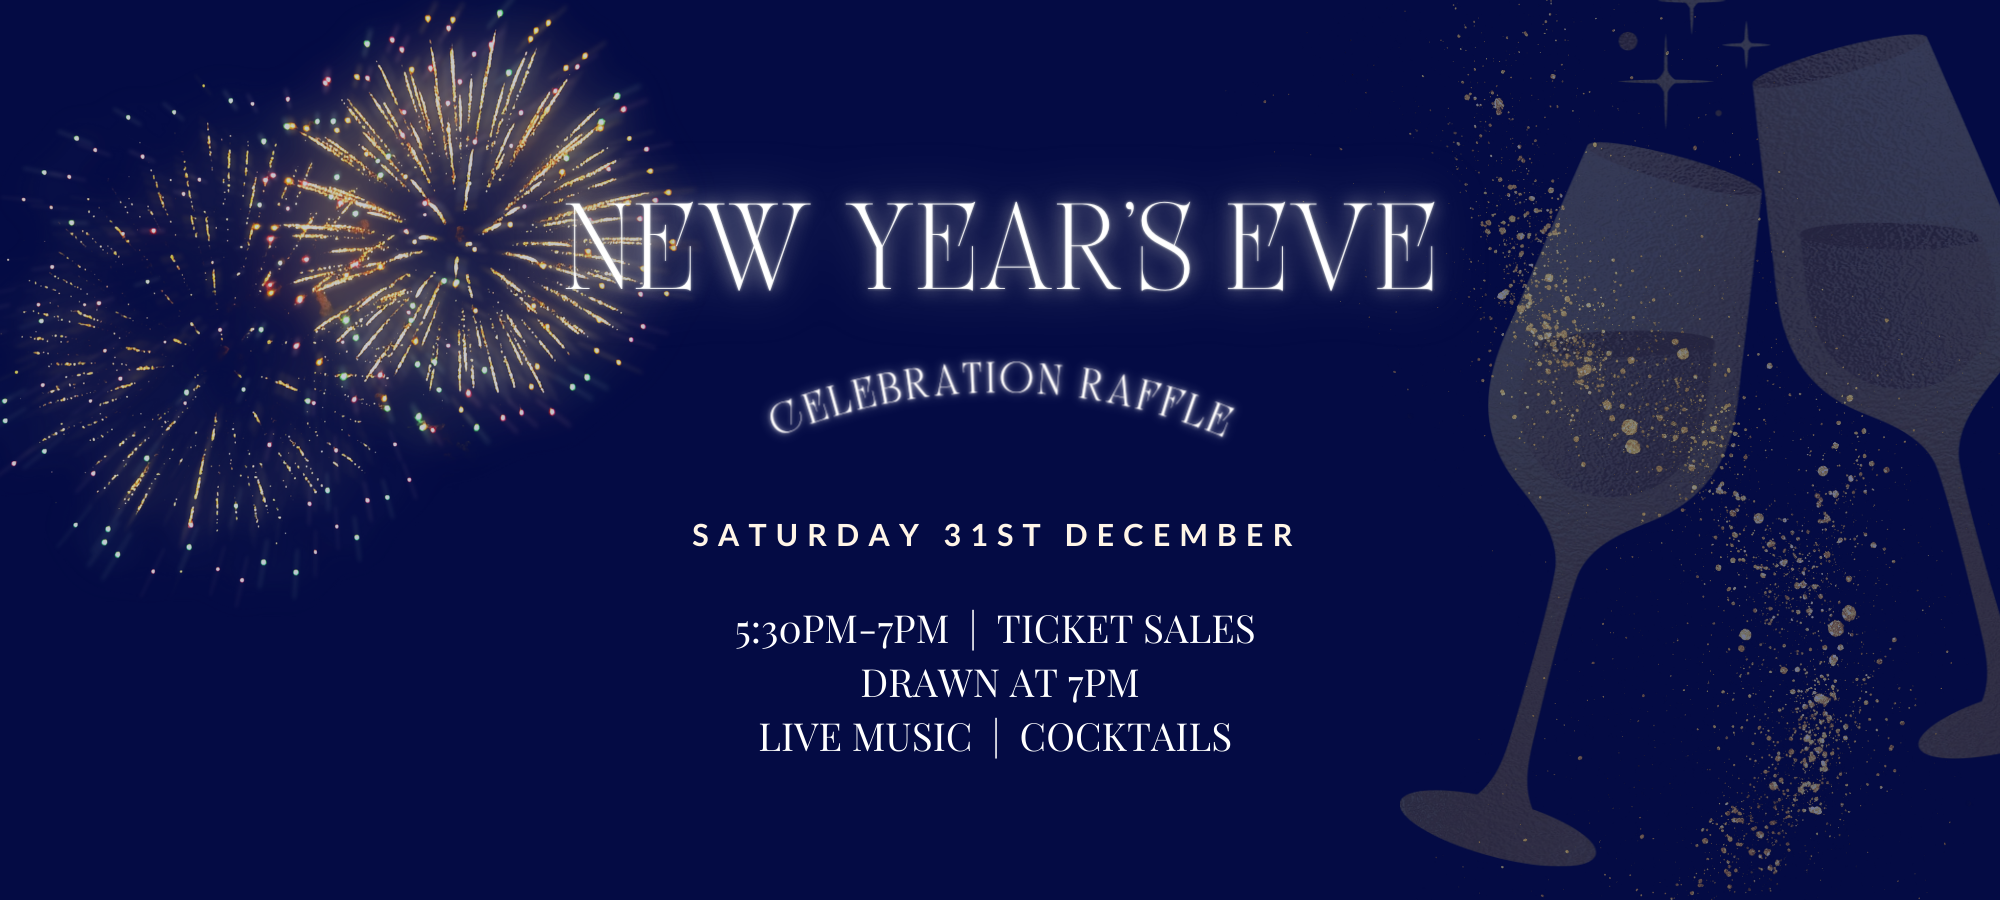 New Year’s Eve Celebration Raffle